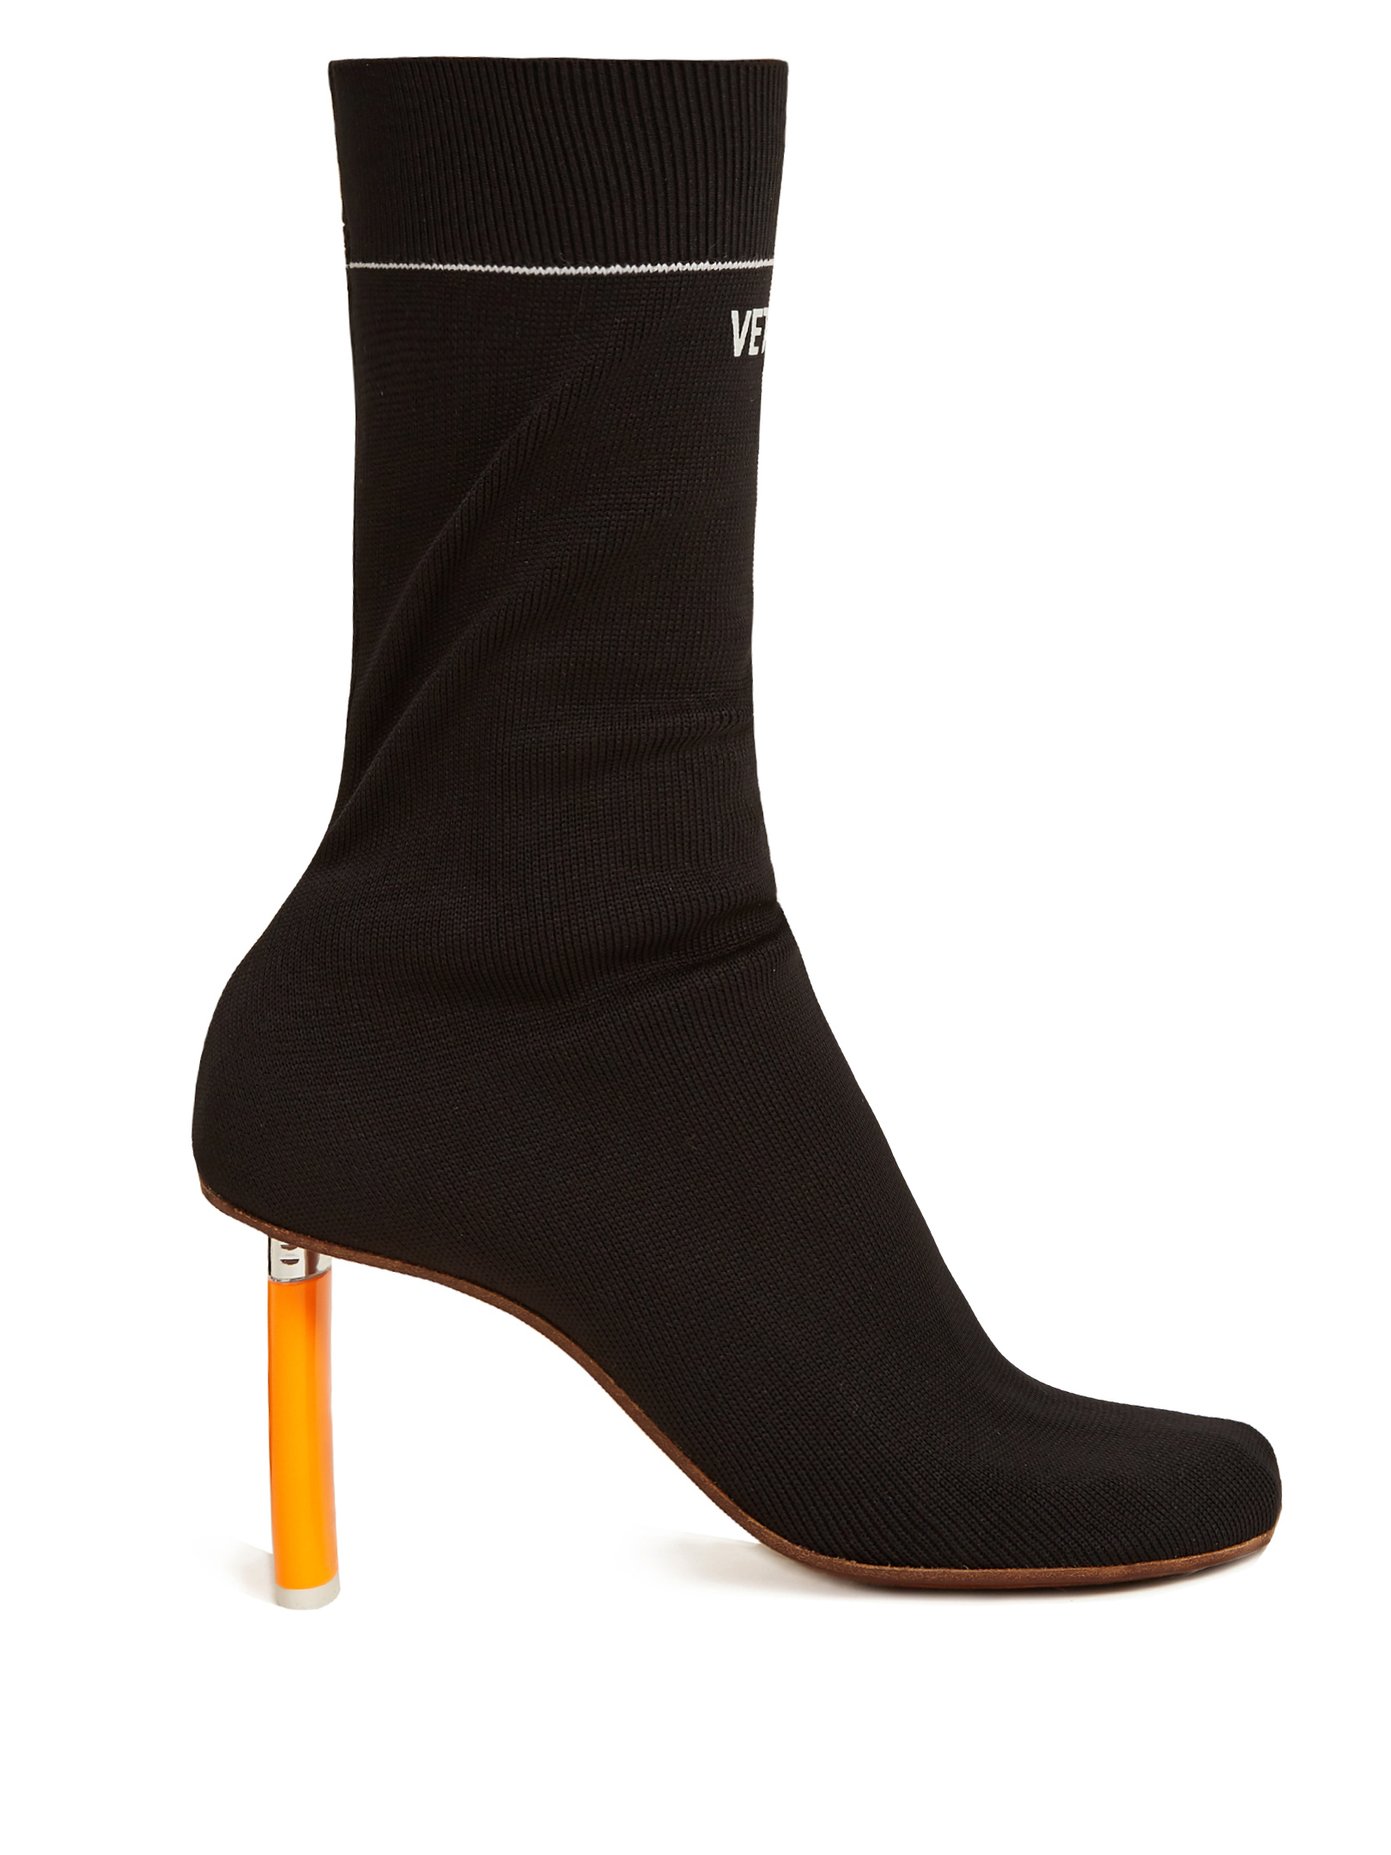 orange sock heels